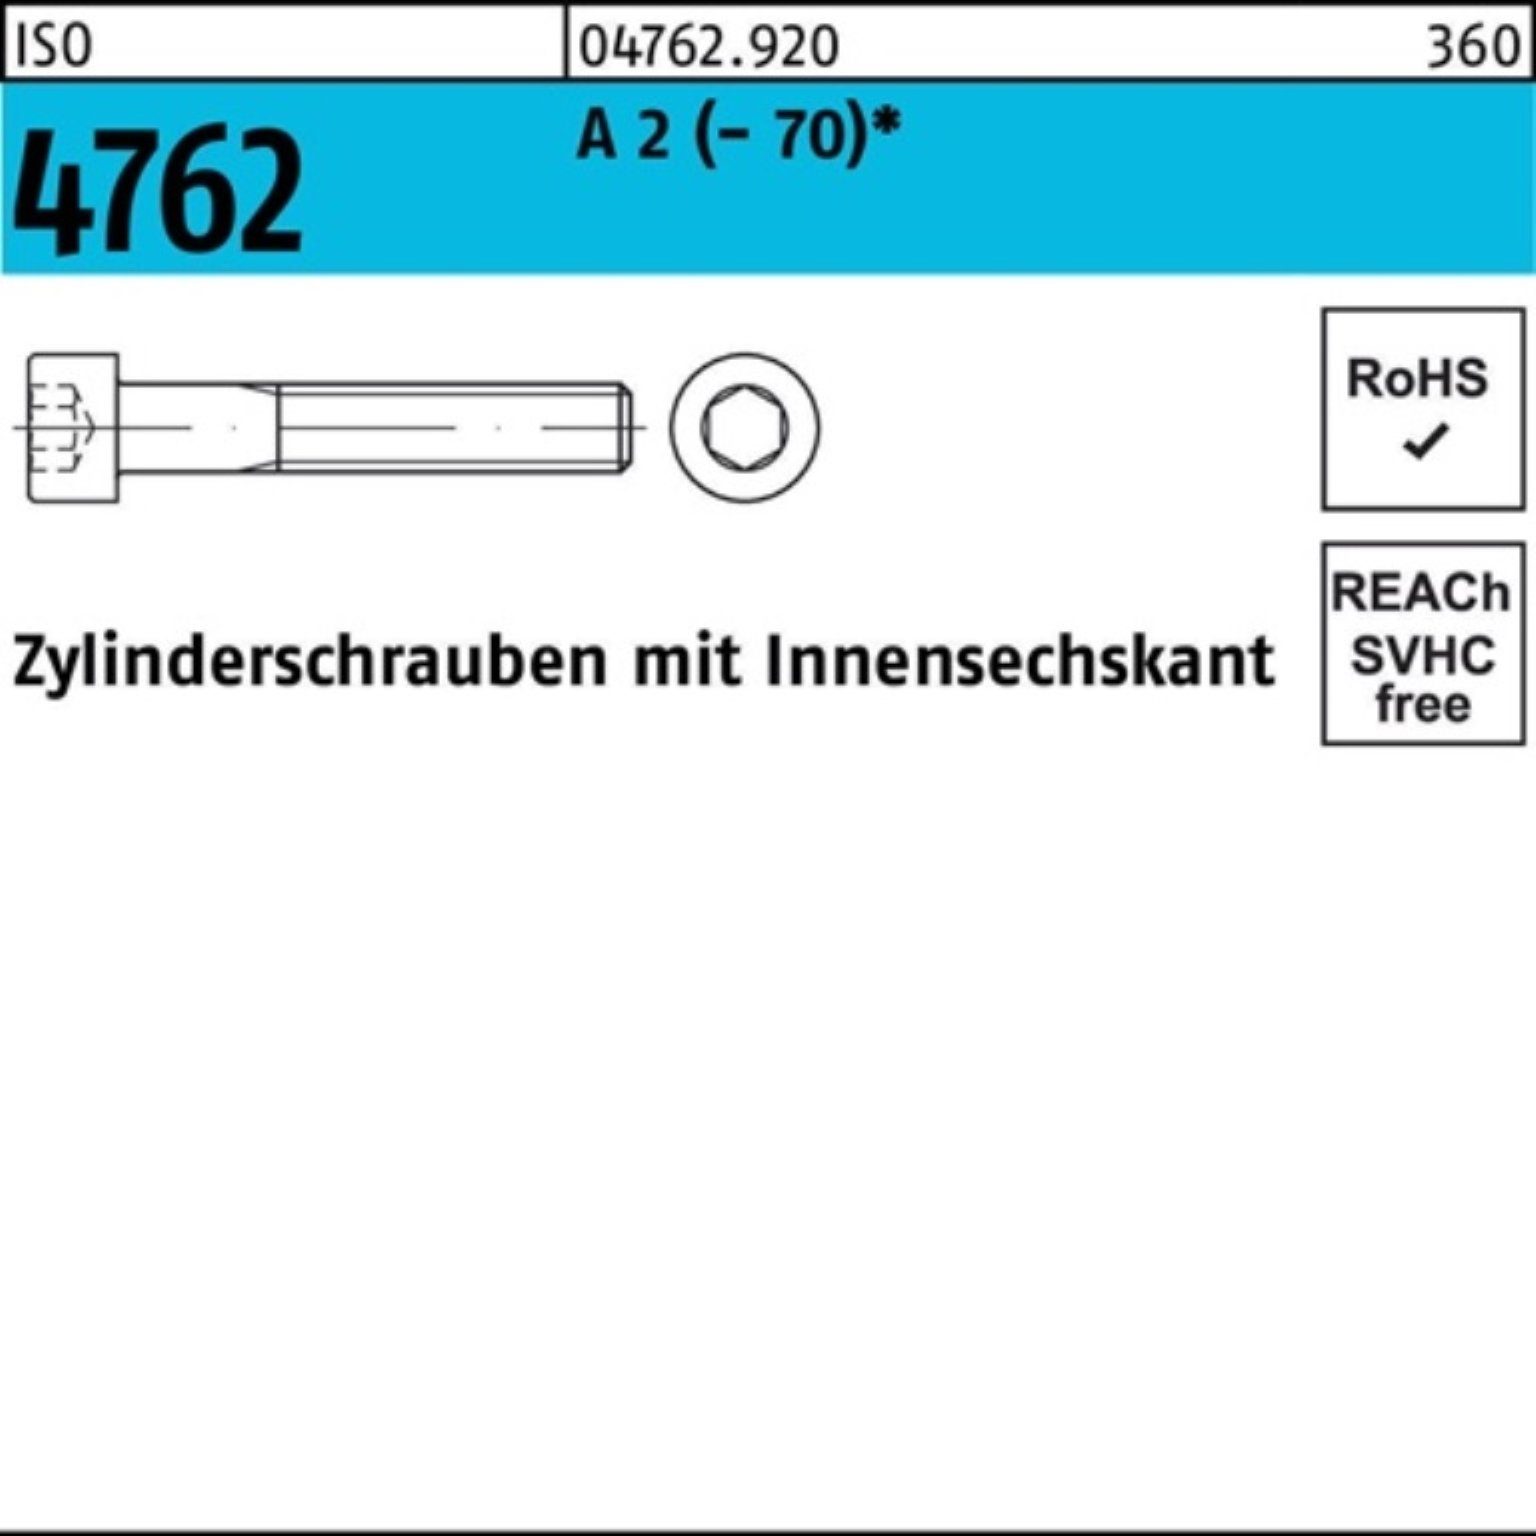 Zylinderschraube S ISO A (70) 2 Zylinderschraube Pack Reyher 45 M6x Innen-6kt 100 100er 4762